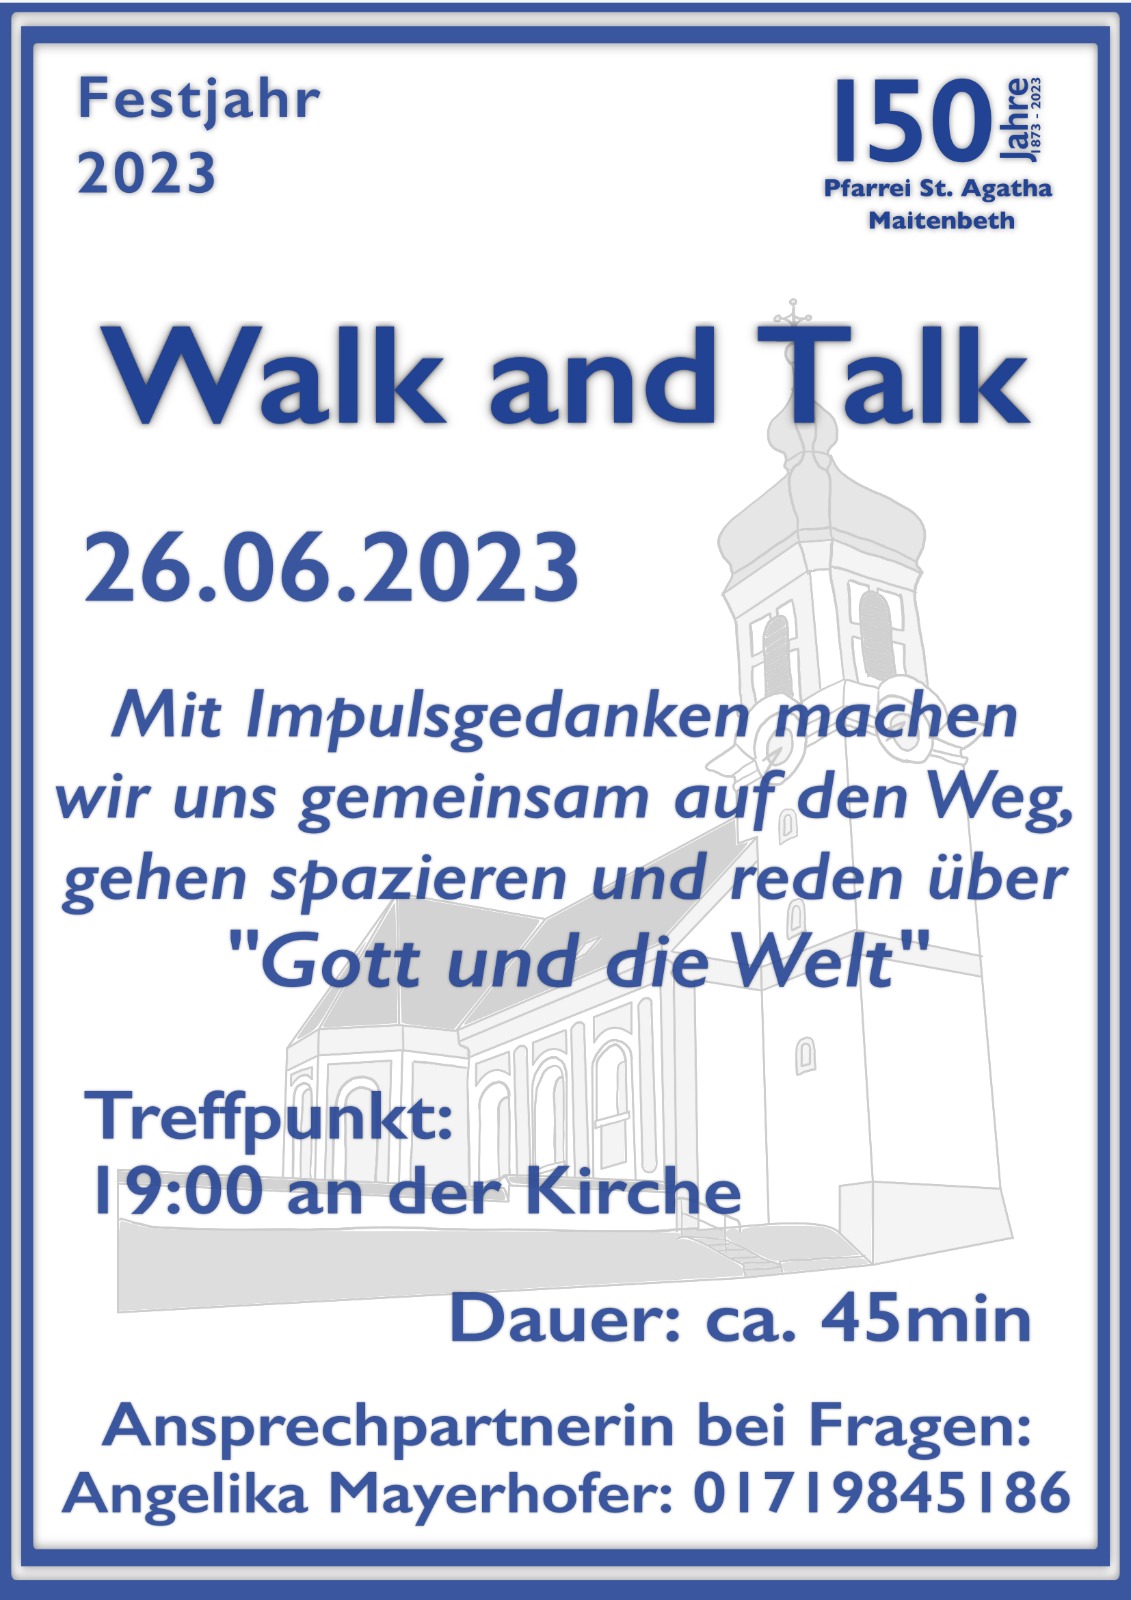 Walk and Talk